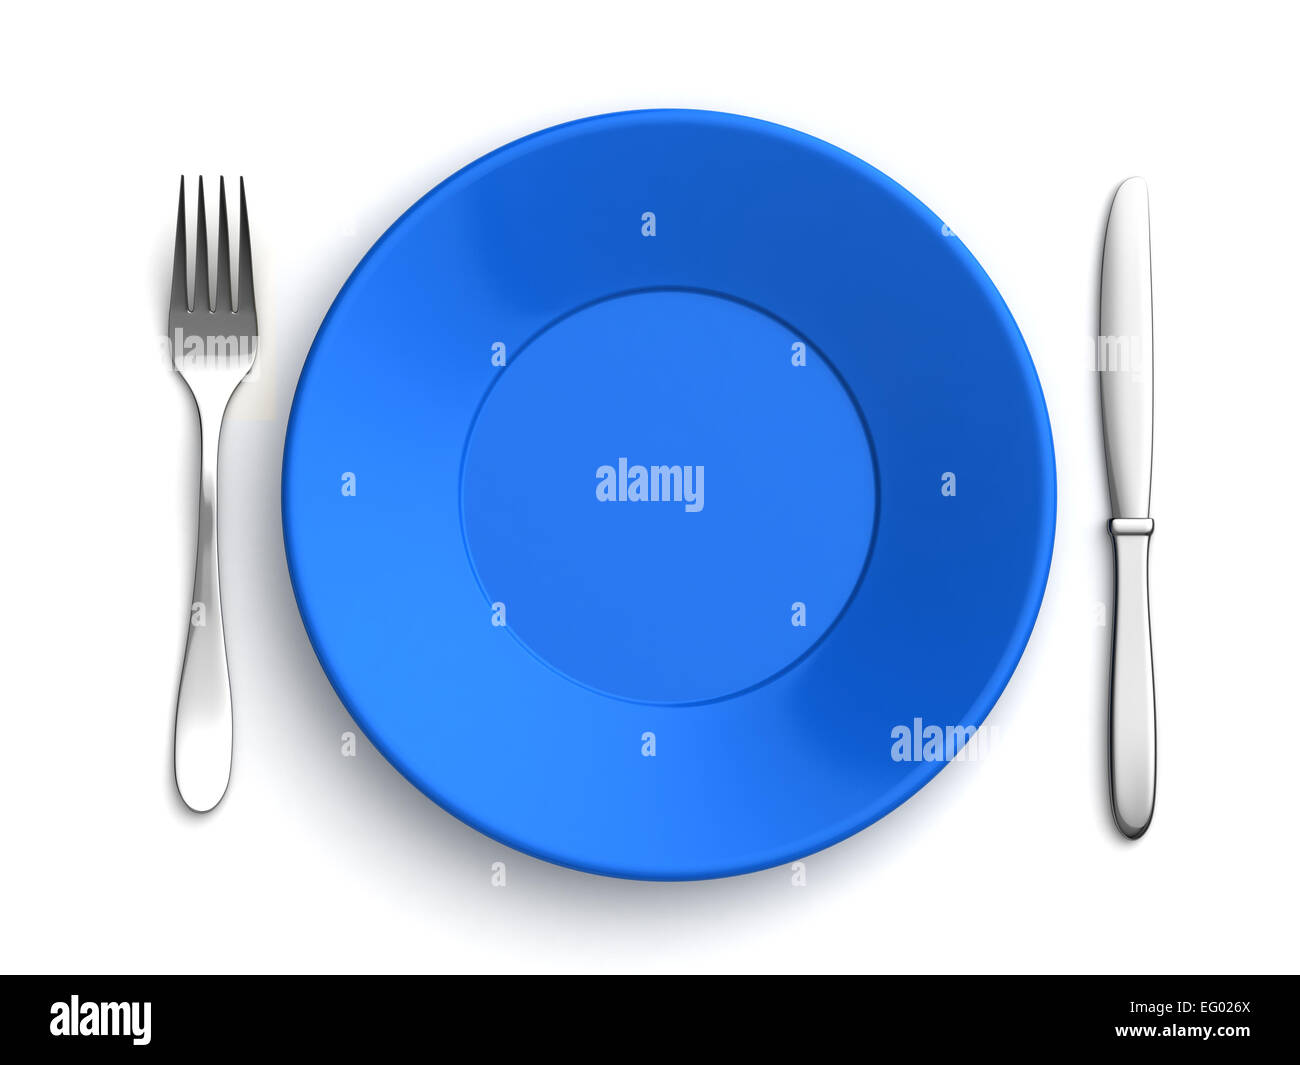 Le rendu 3D de couteaux, fourchettes et plaque bleue sur fond blanc Banque D'Images